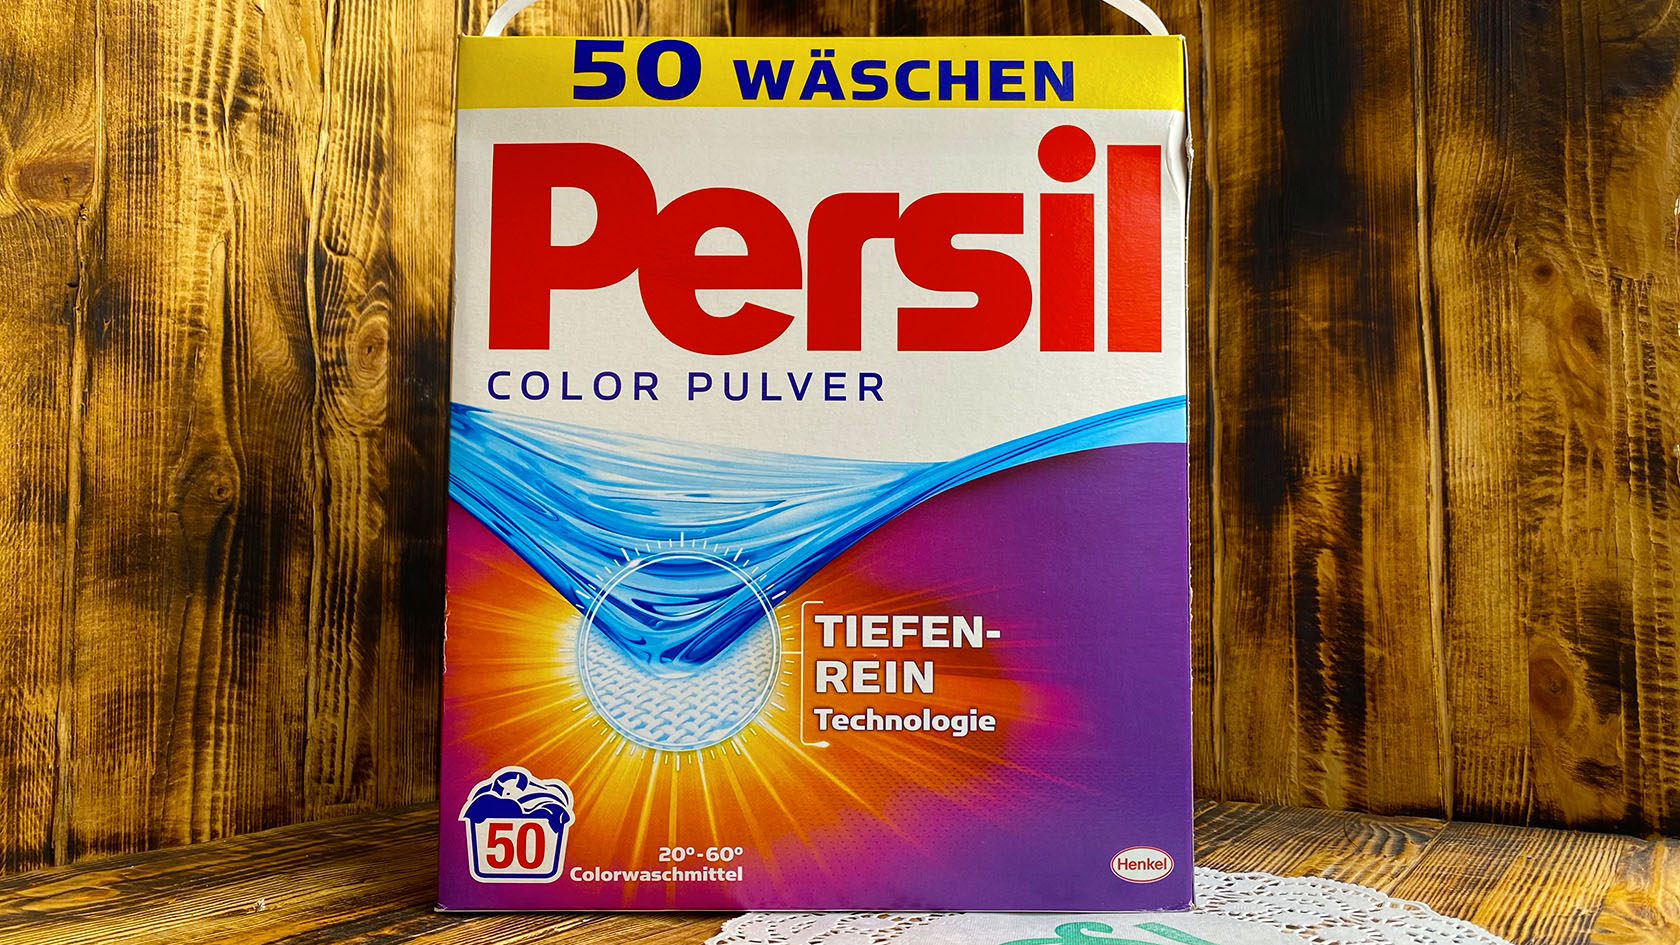 Стиральный порошок Persil Color Pulver - производство Германии 6,5 кг